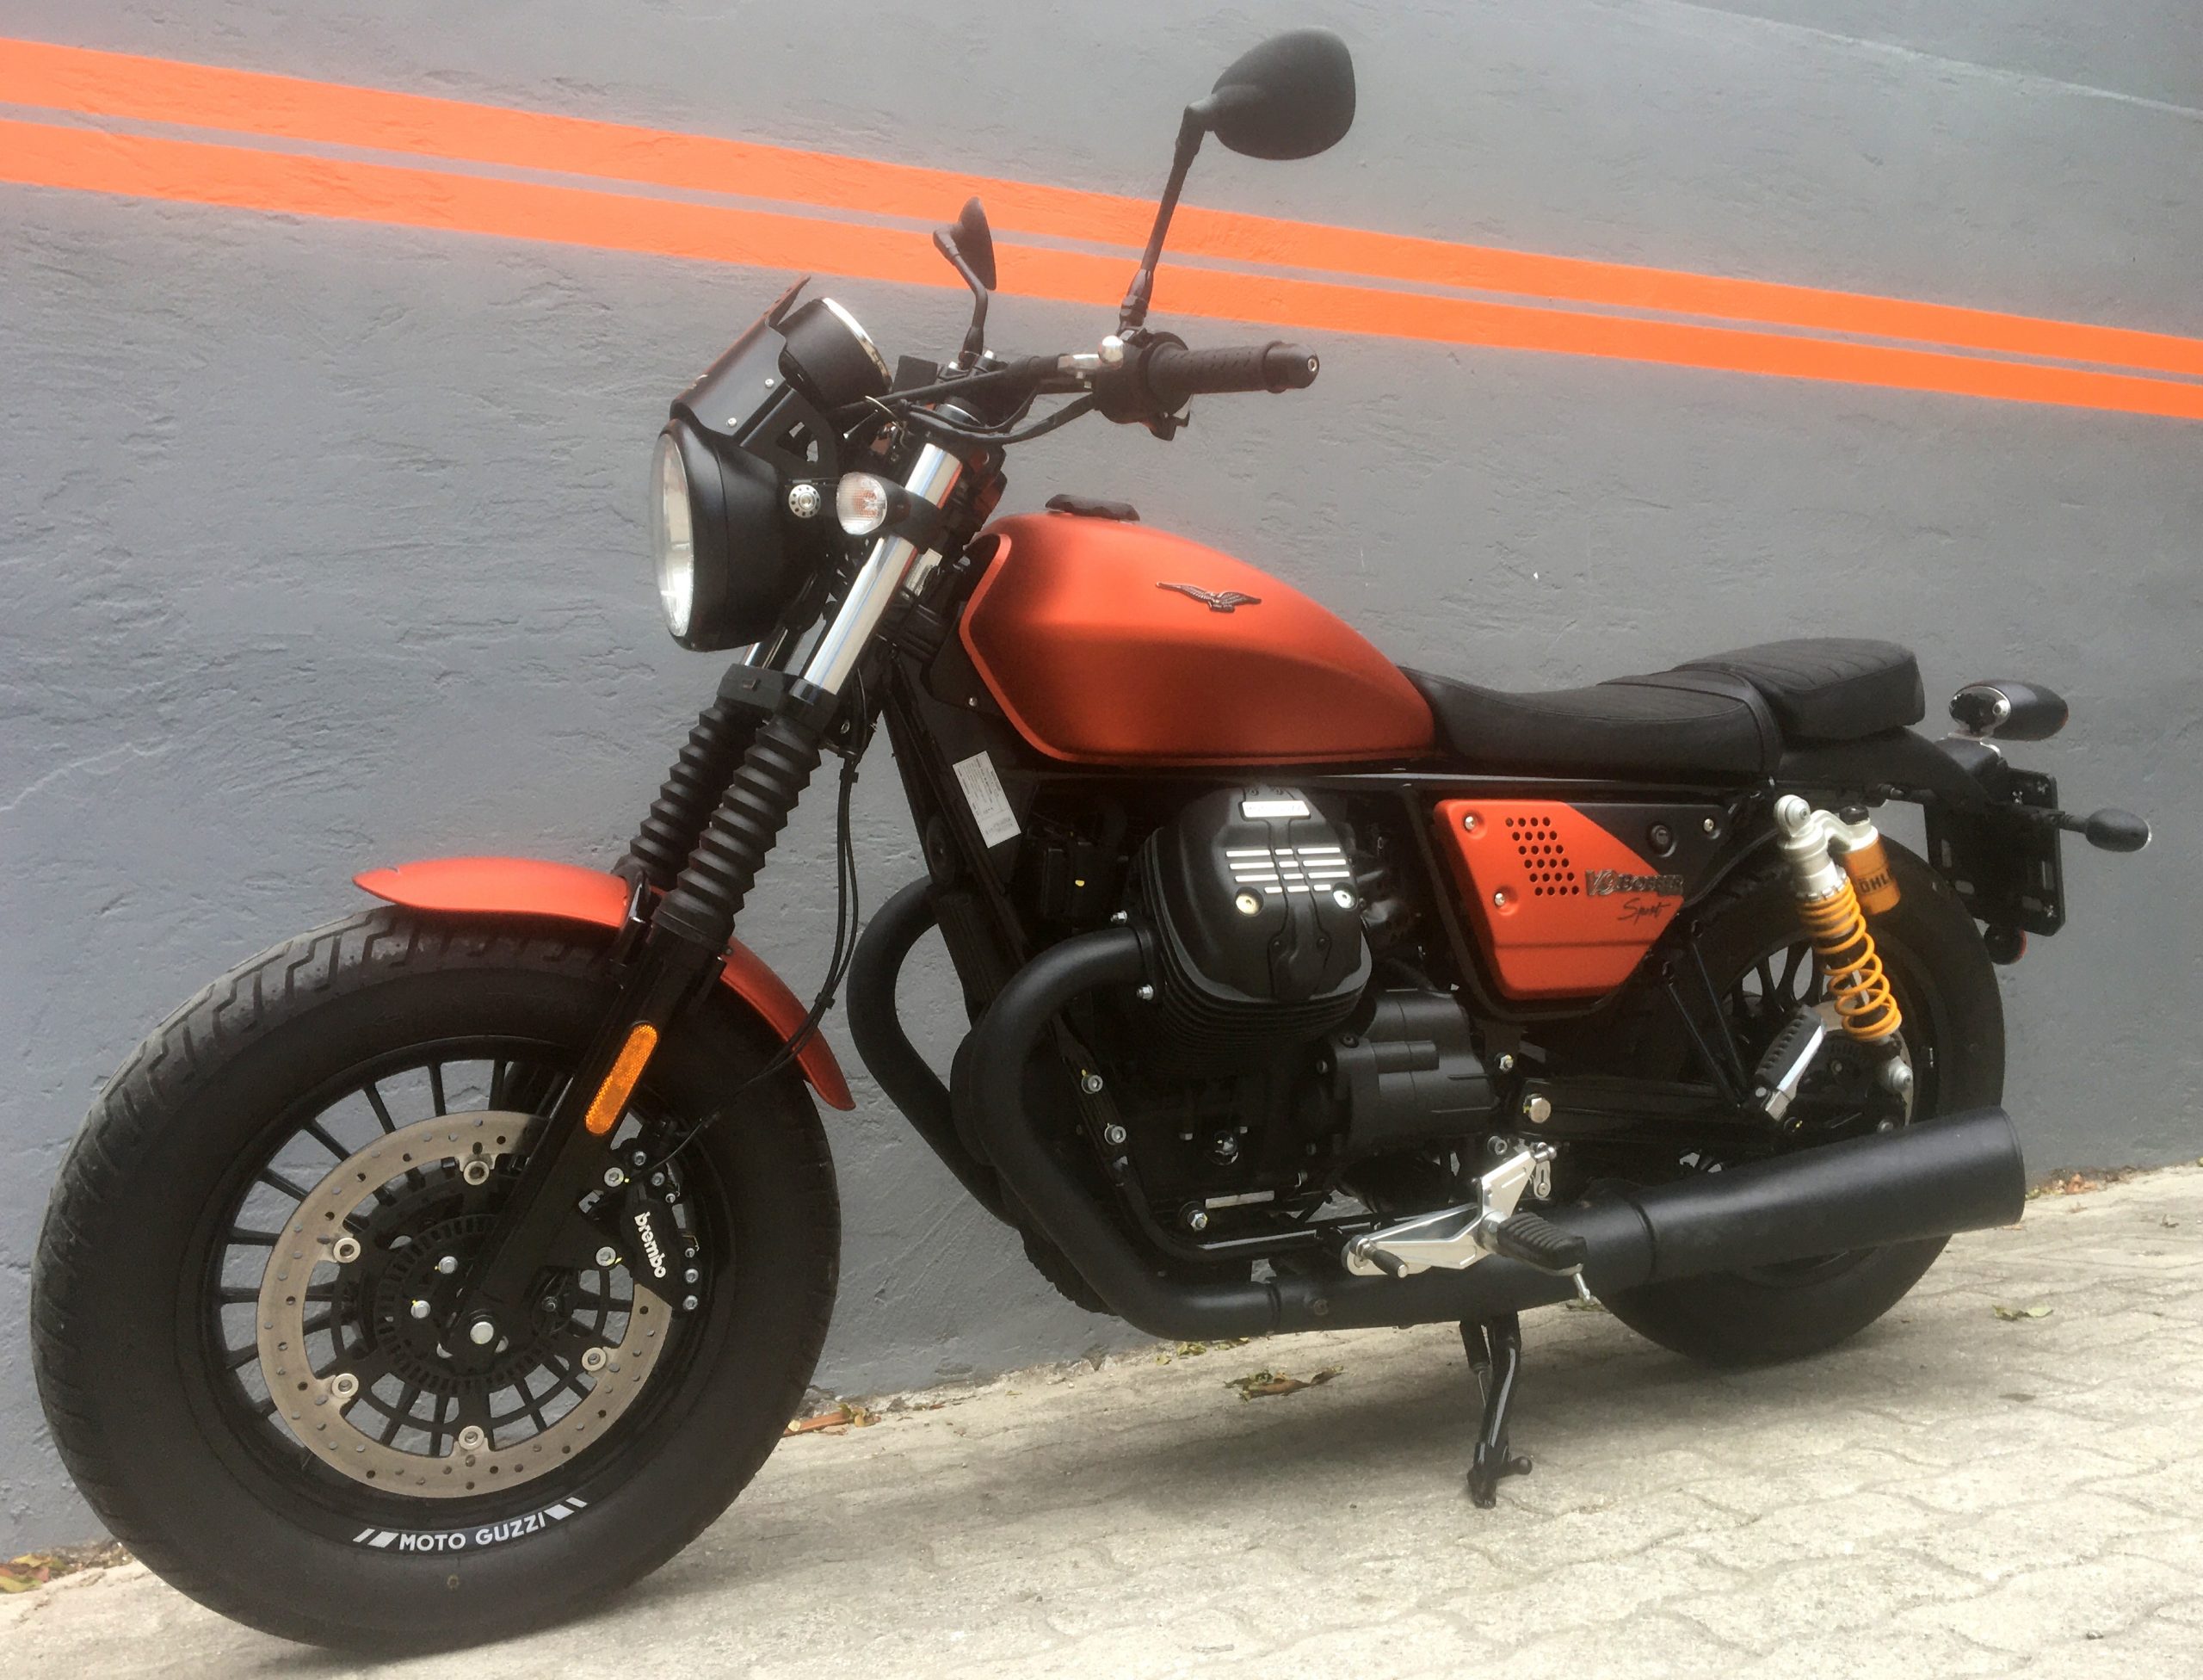 Moto Guzzi V9 Bobber Sport (09/2020) – KM 2912